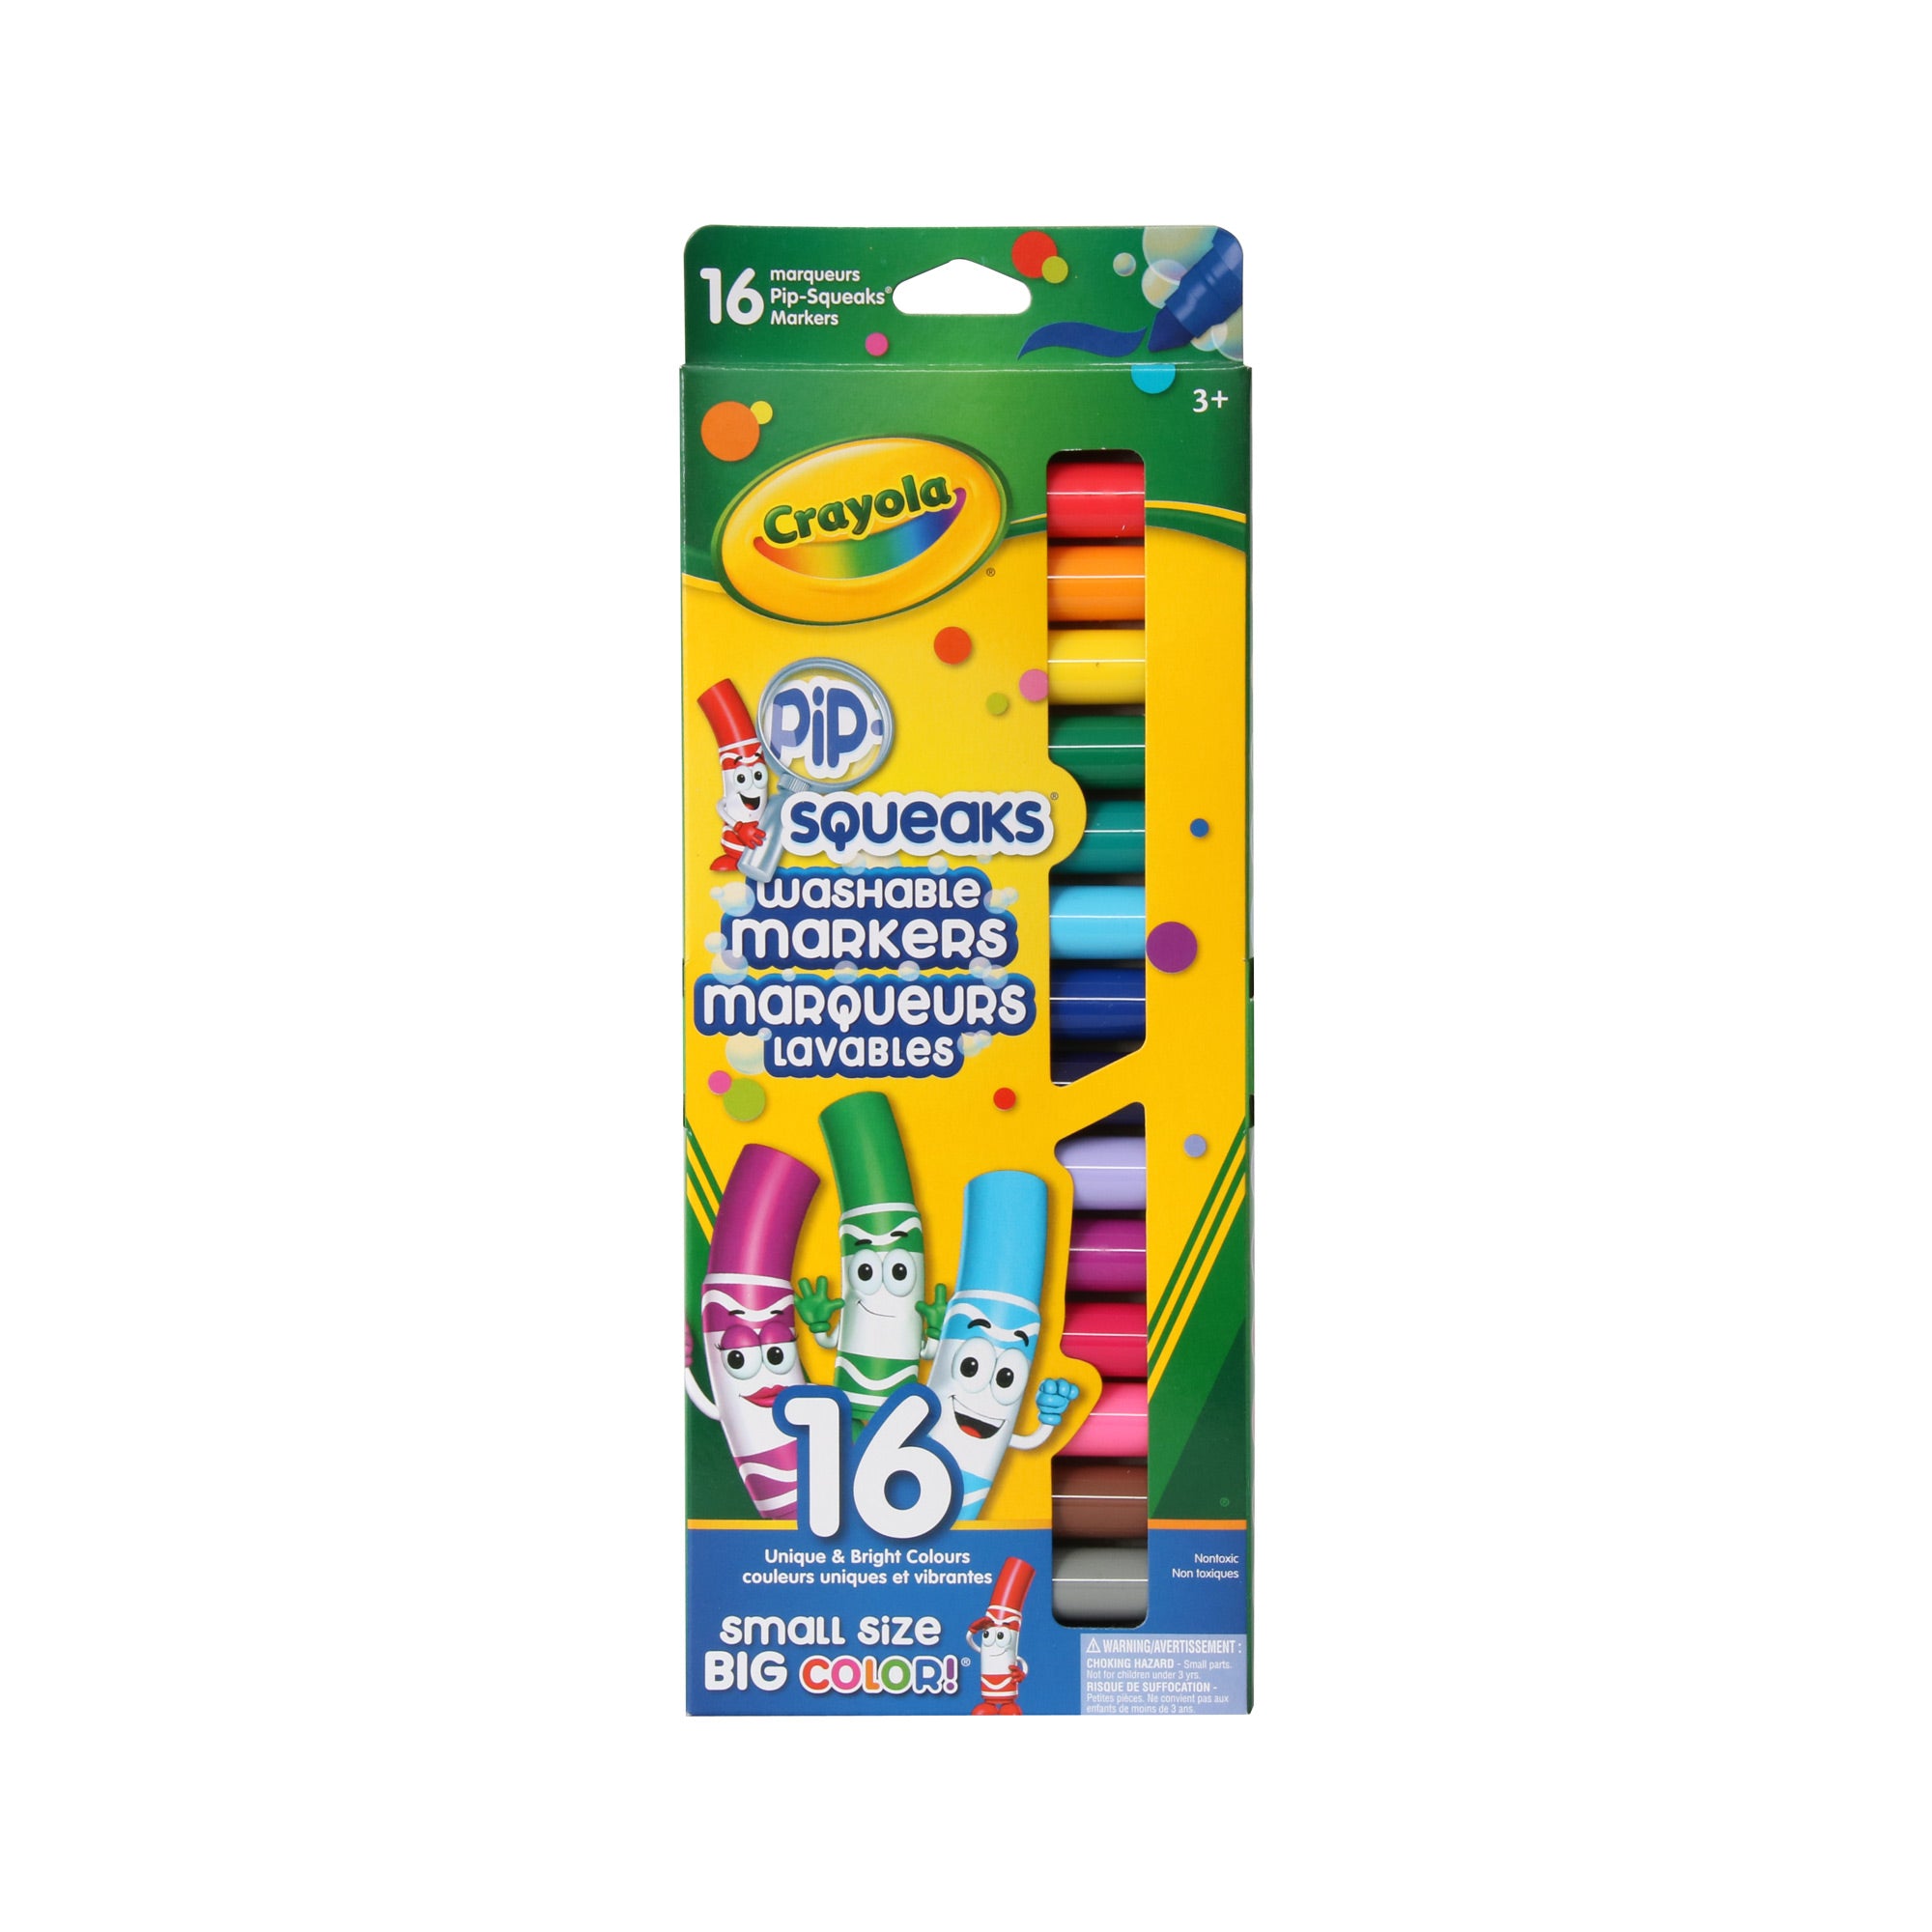 Crayola - 8 Feutres effaçables à sec - boîte française - sur